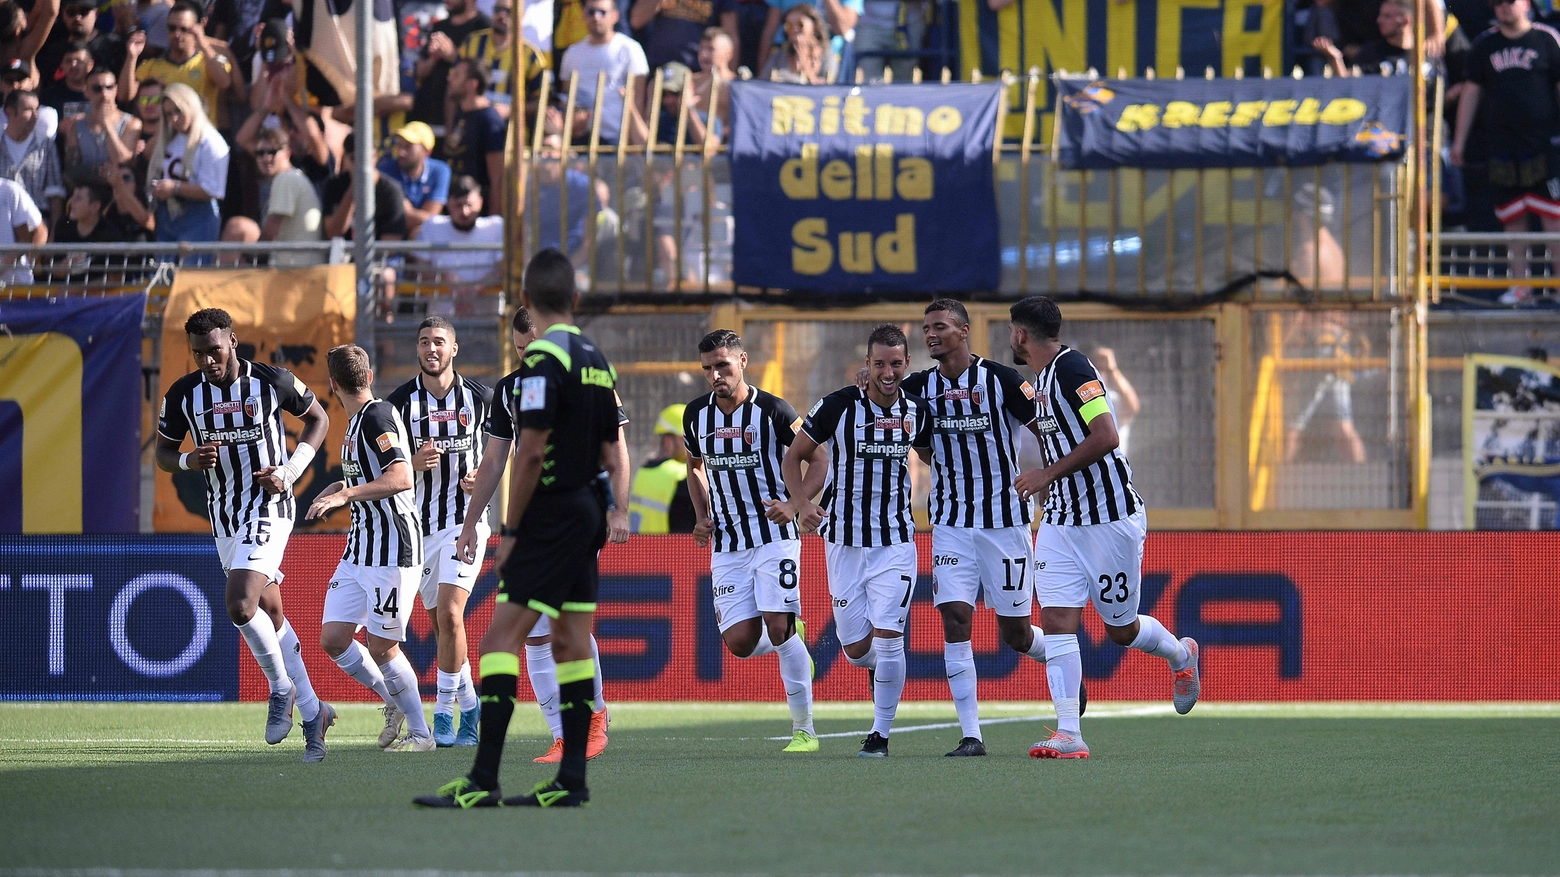 Juve Stabia-Ascoli, bianconeri travolgenti (foto Lapresse) 